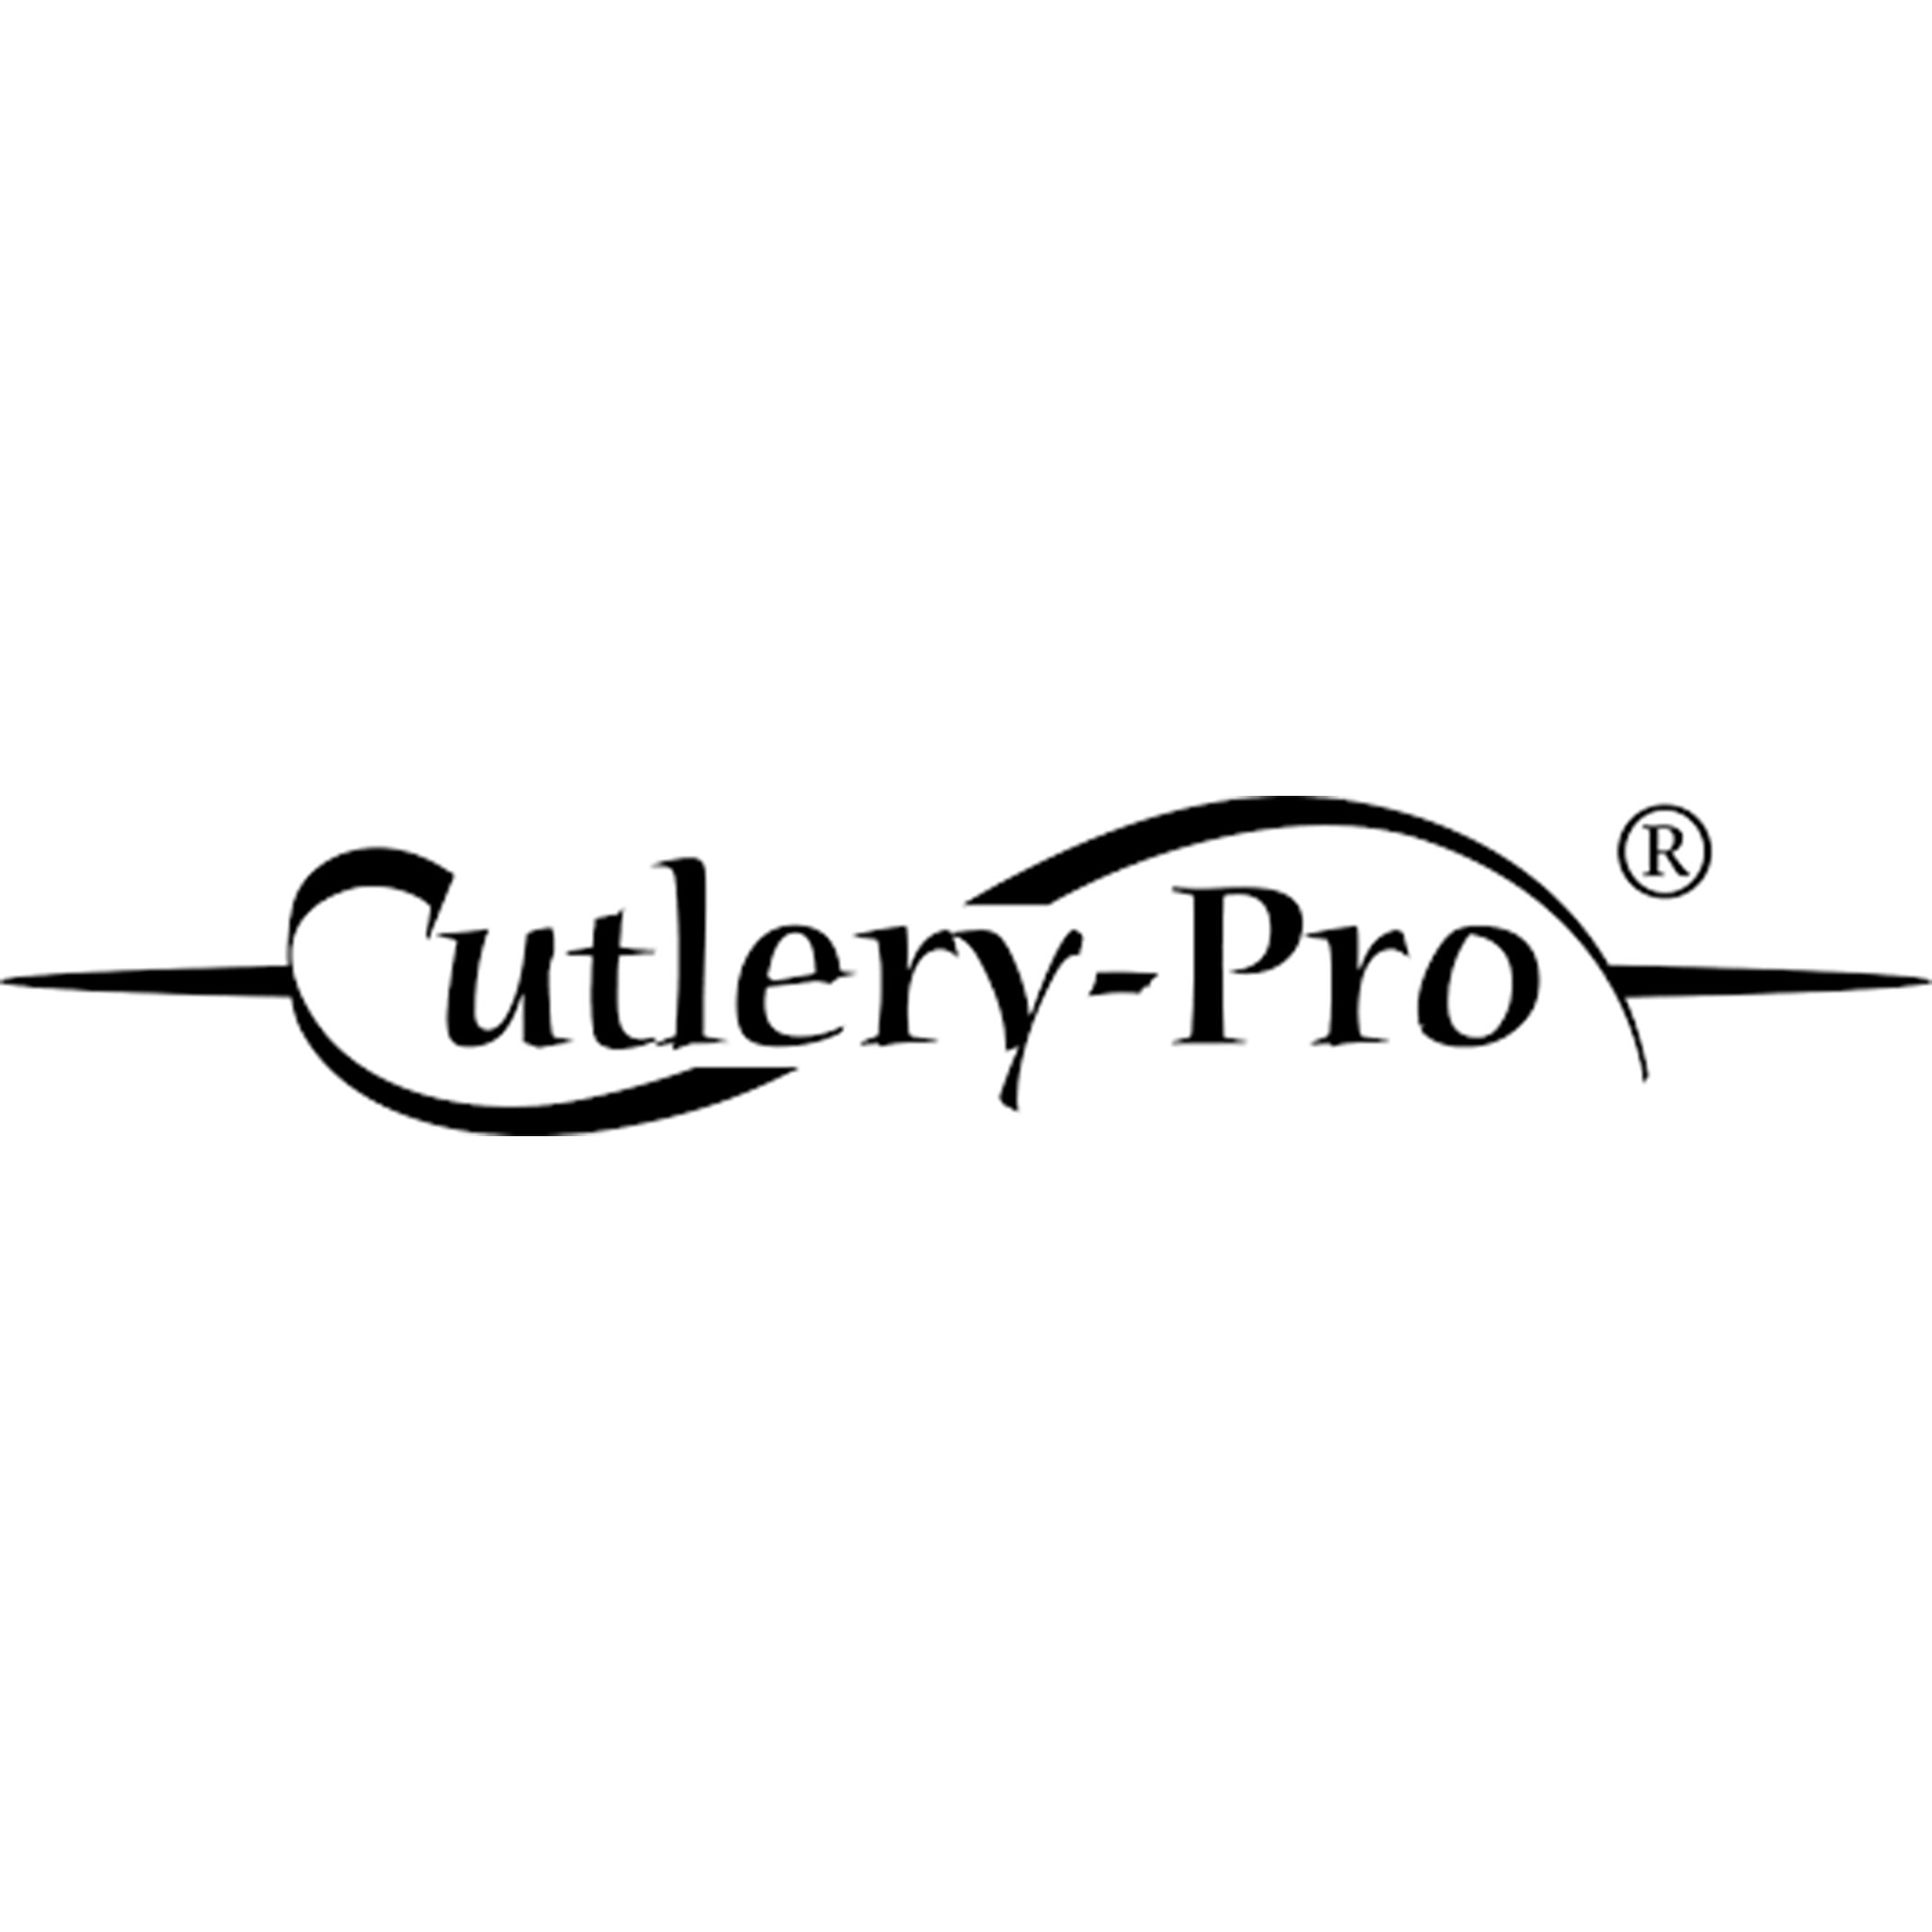 Cutlery Pro